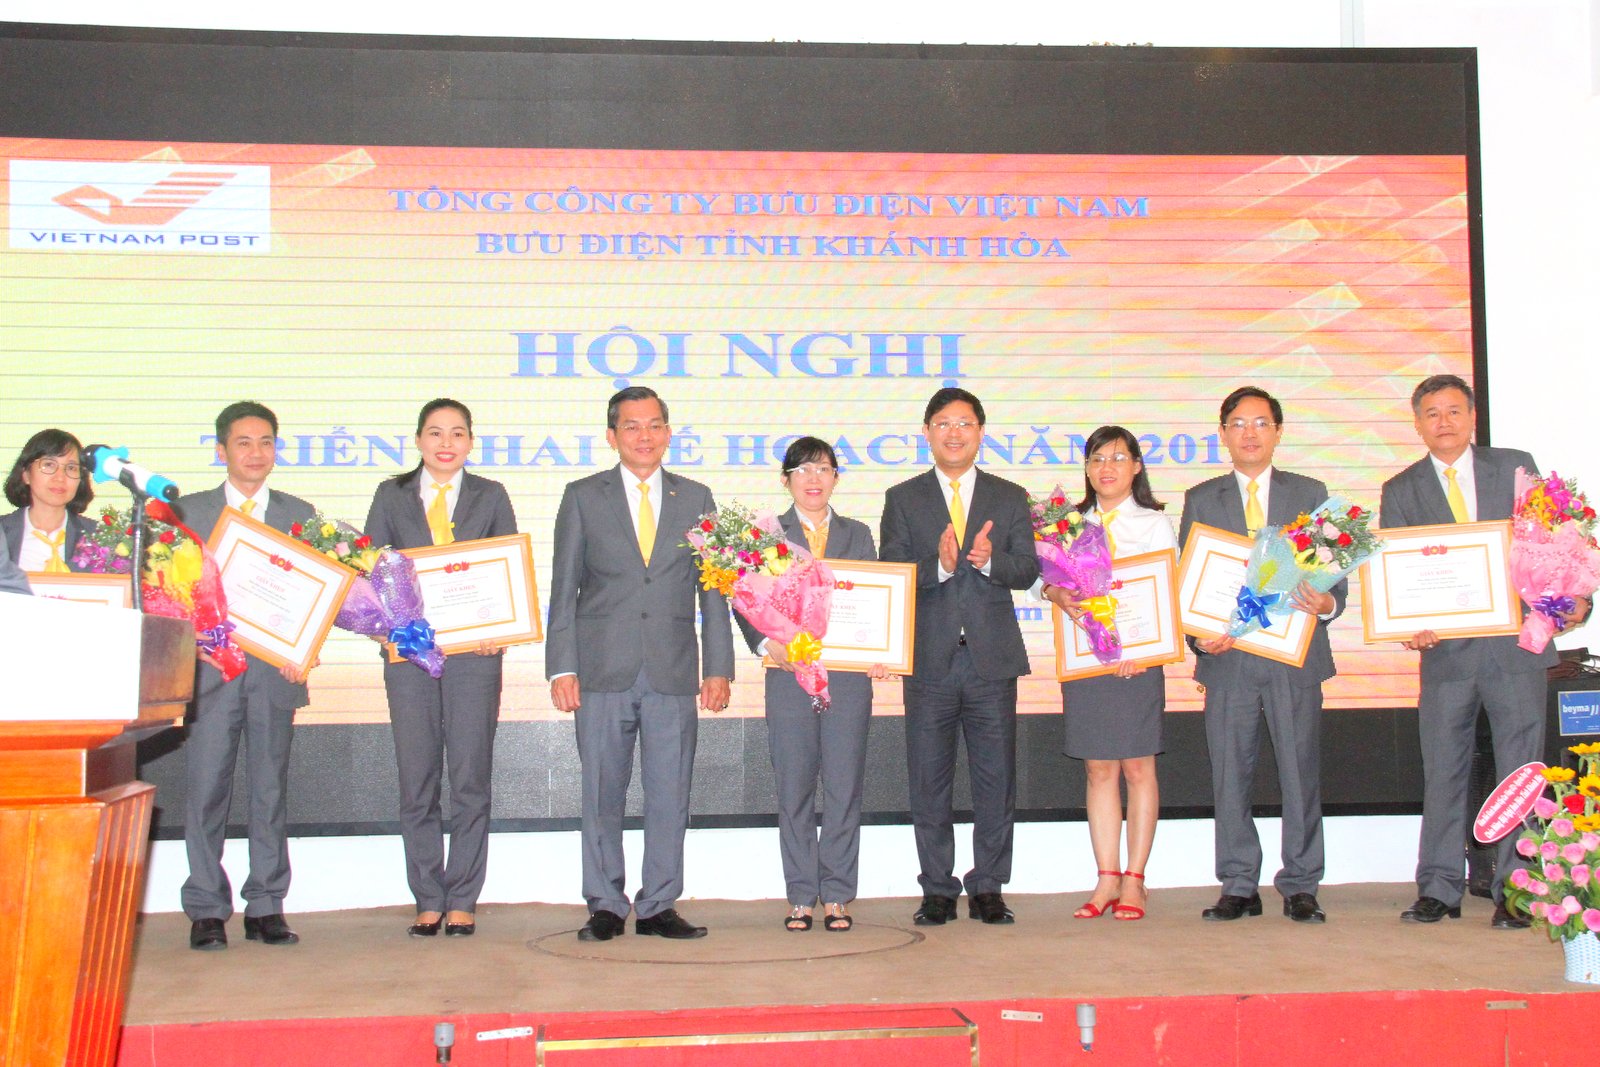  Lãnh đạo Tổng Công ty Bưu điện Việt Nam và Bưu điện tỉnh Khánh Hòa trao Giấy khen cho các tập thể có thành tích xuất sắc trong năm 2018